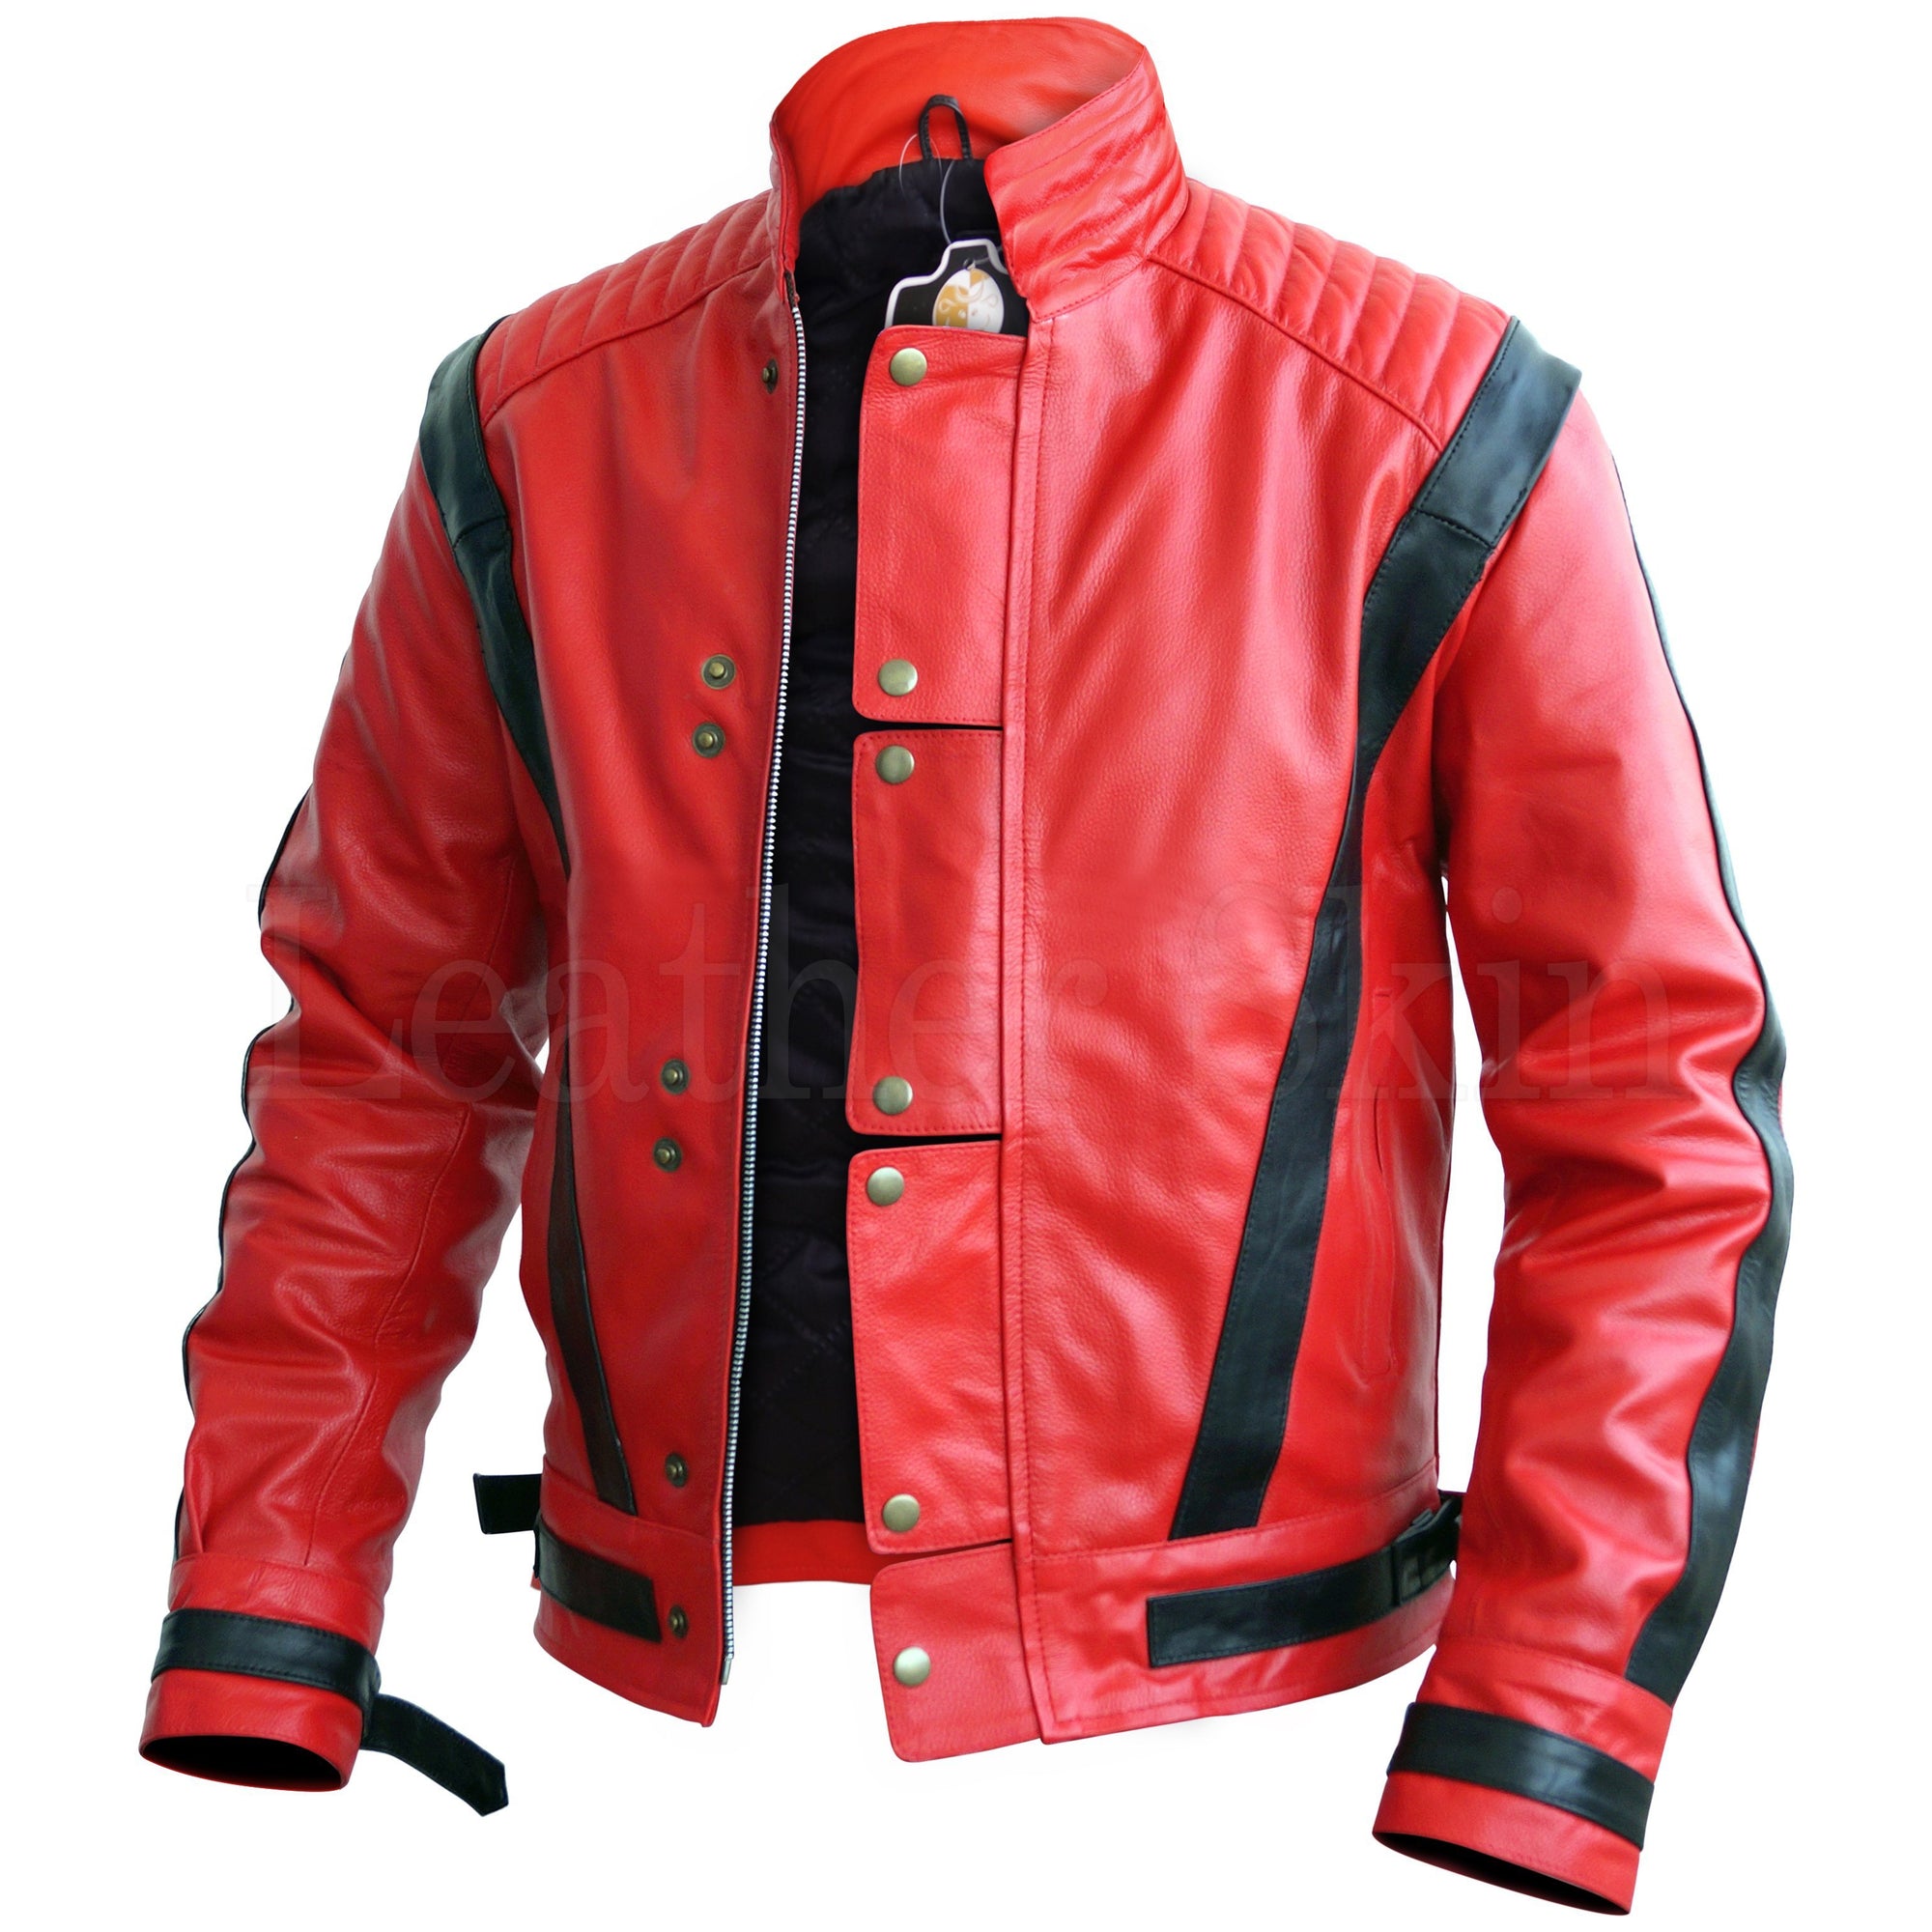 Мужские куртки red. Ред джакет. Куртка Jasper мужская красная кожаная. Кожаные куртки ред скинс. Черно красная куртка.